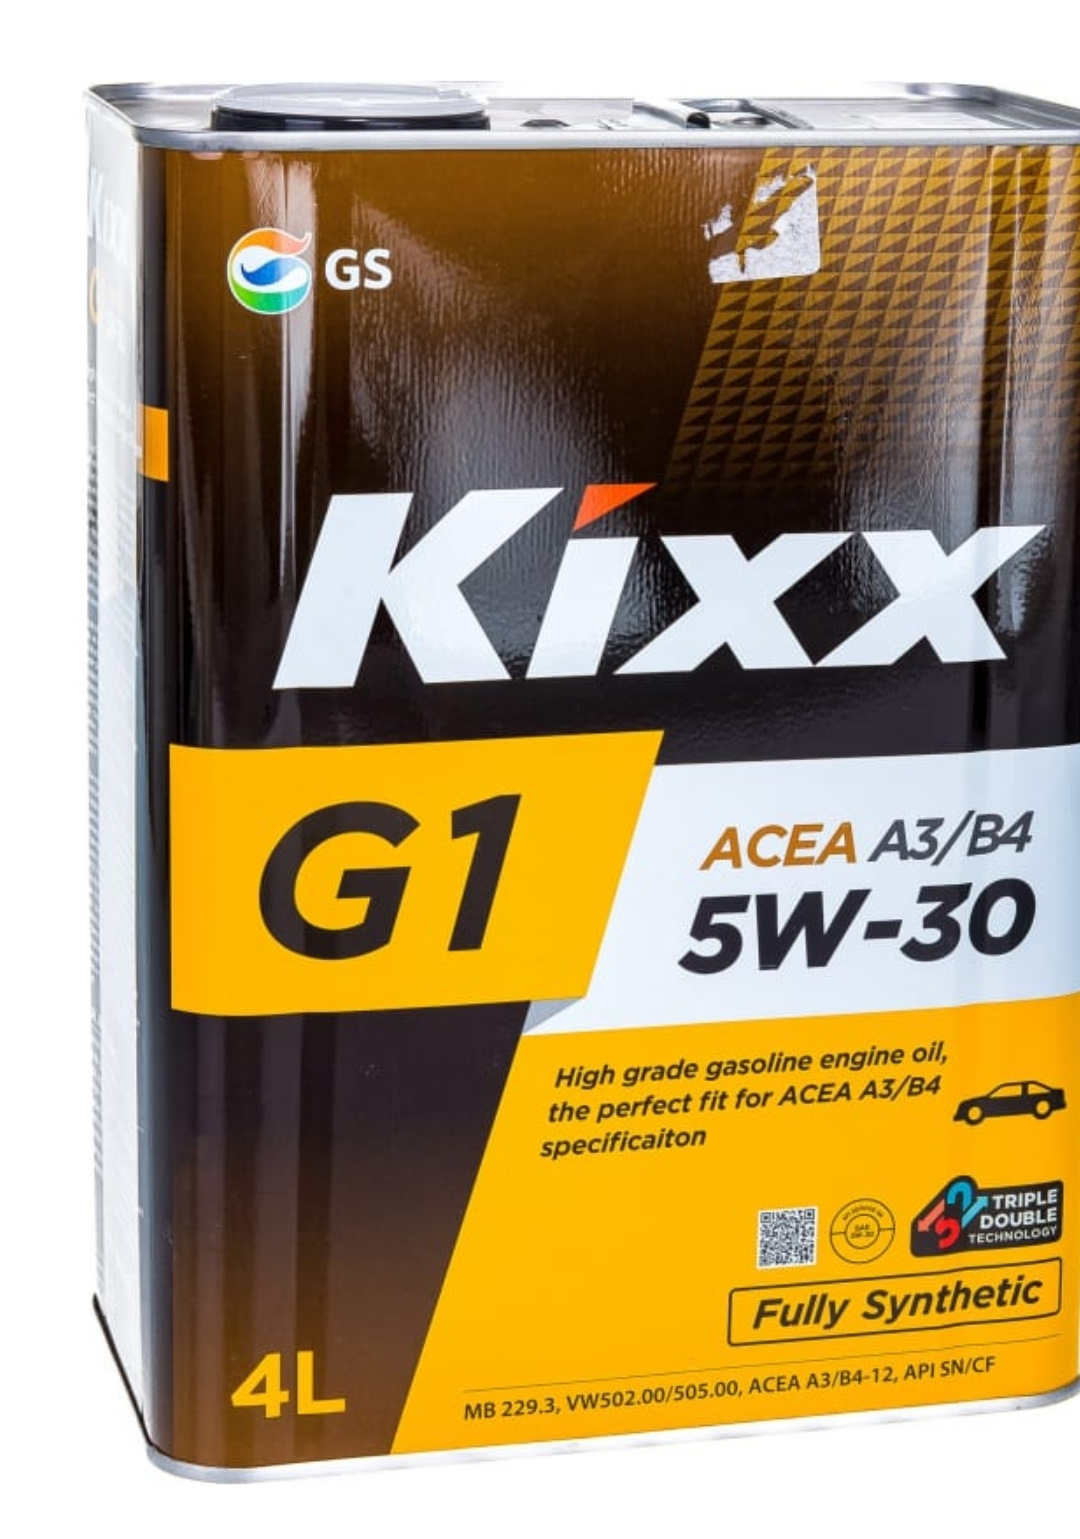 Масло kixx 5w30 g1. L531044te1 Kixx. Масло Кикс 5w30 синтетика. Масло моторное Kixx g1 5w-30 API SN/CF, ACEA a3/b4 4л l531044te1. Kixx 5w30 синтетика.